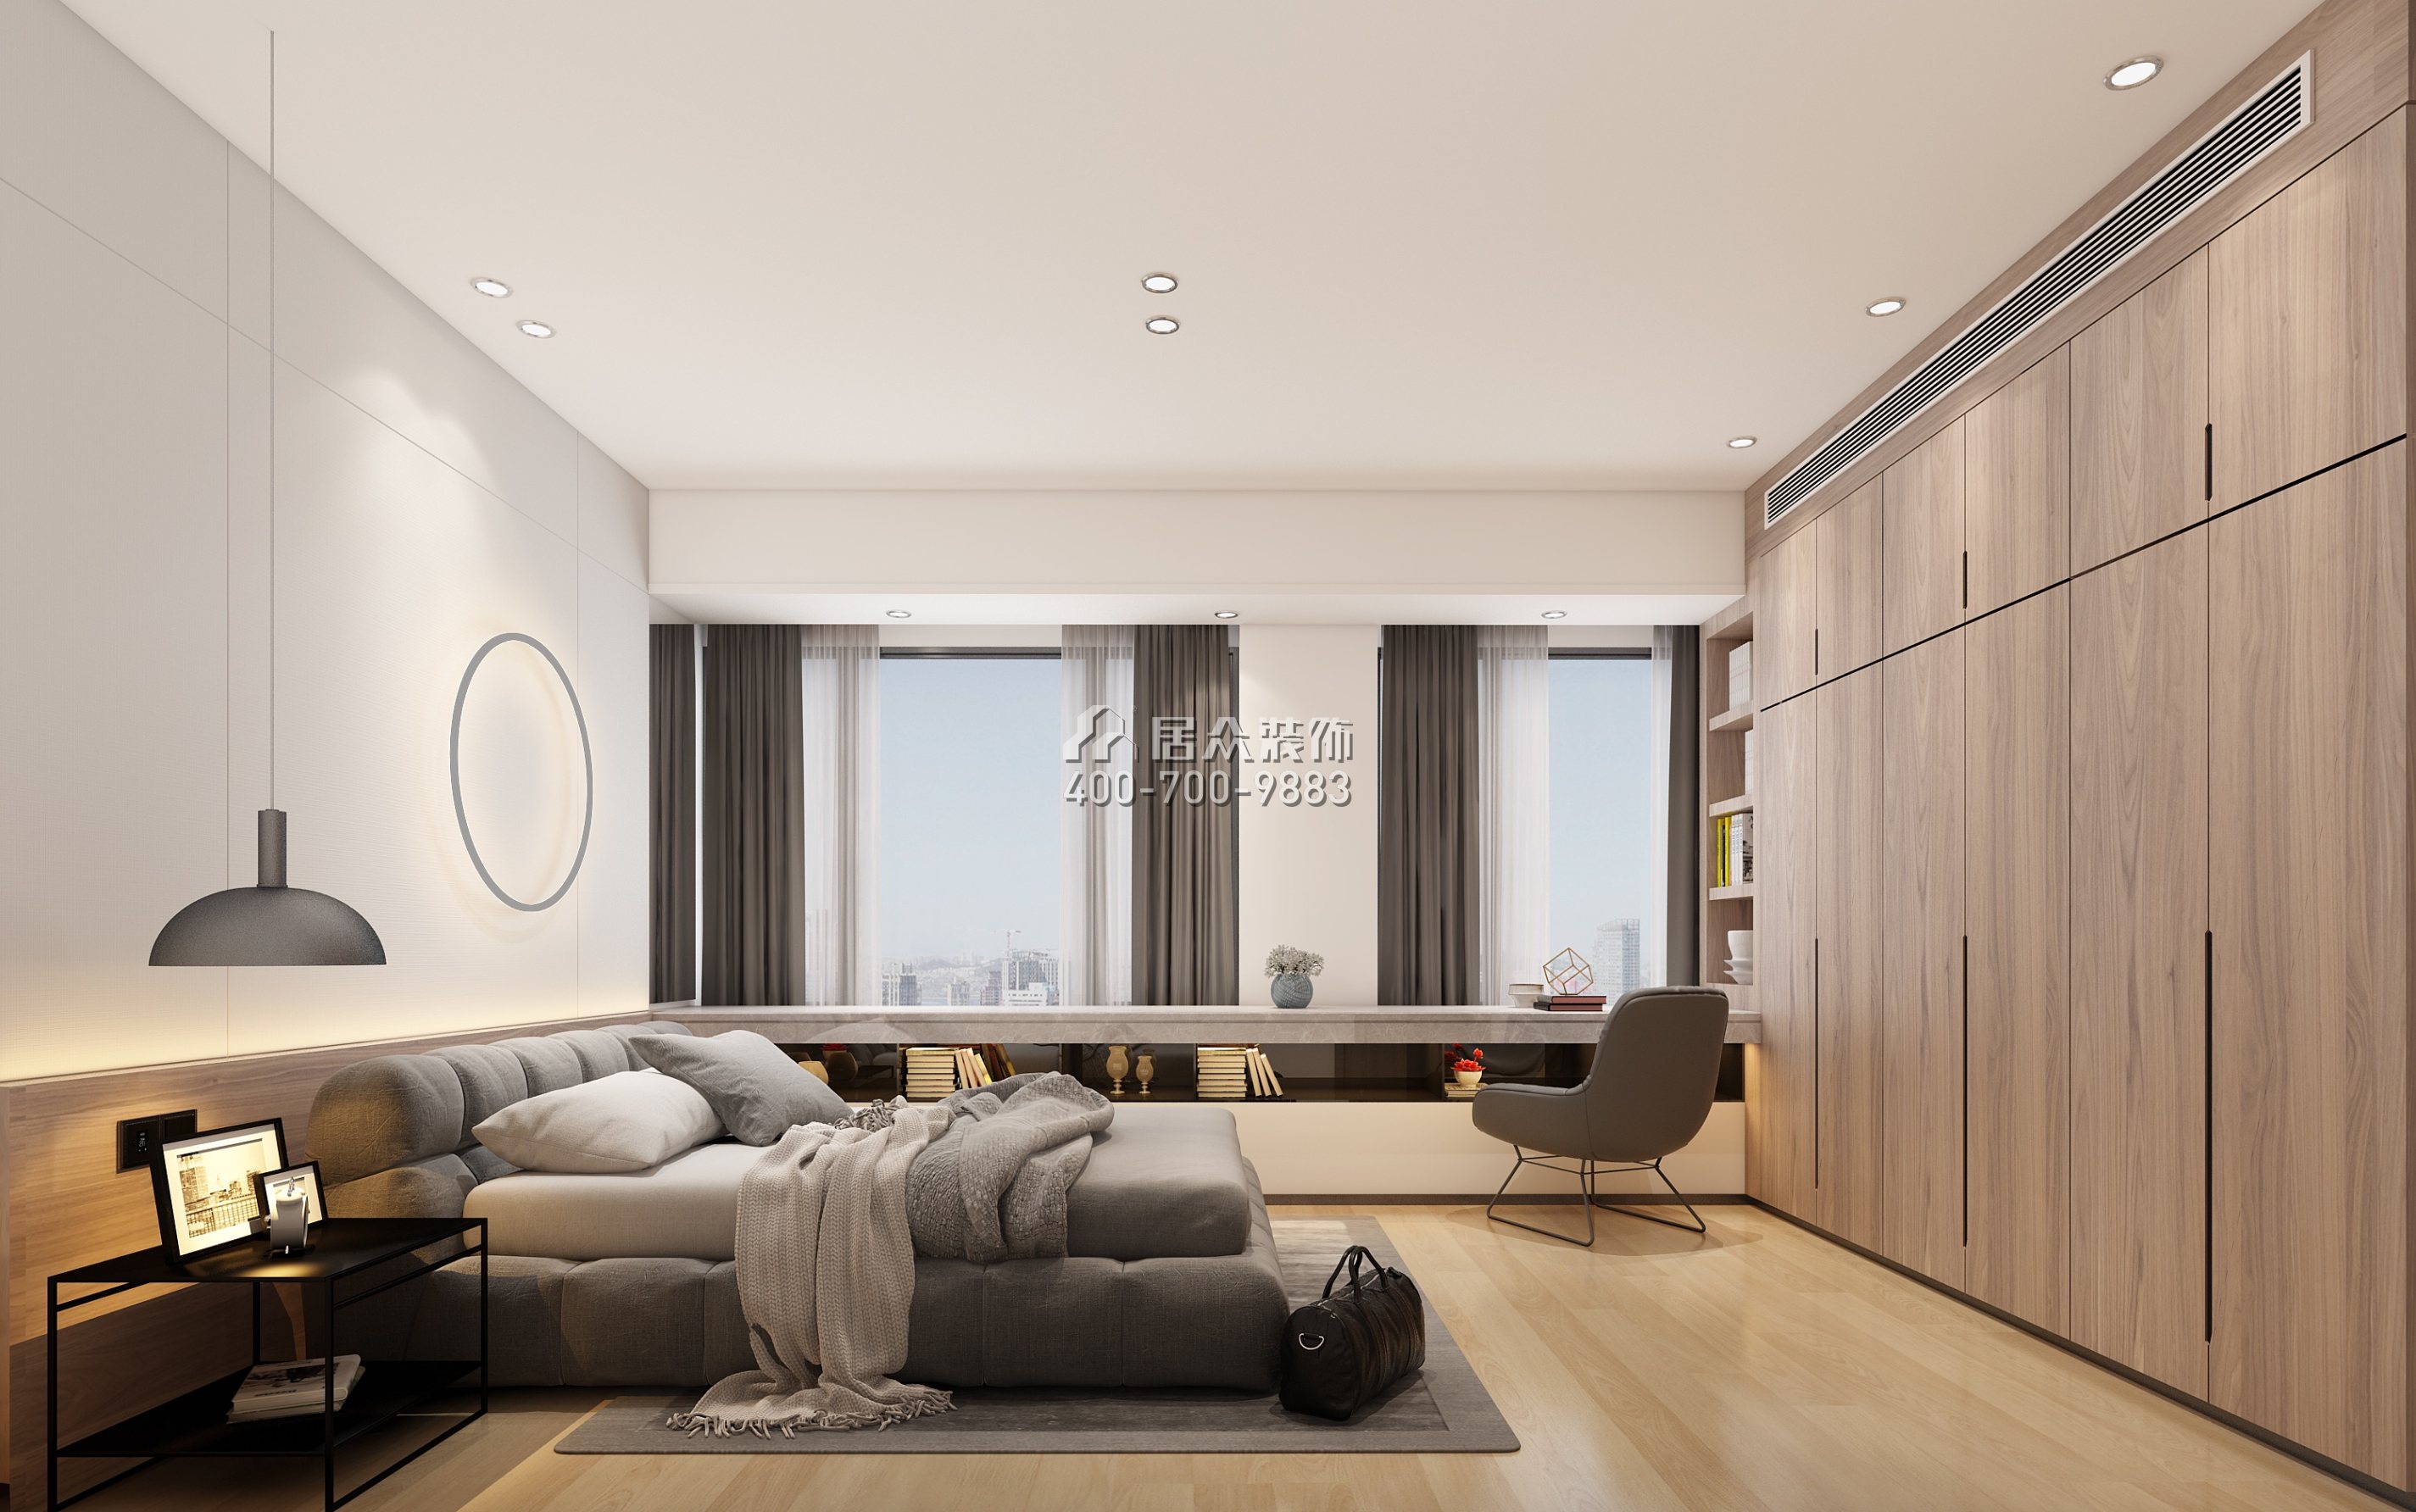 港麗豪園135平方米現代簡約風格平層戶型臥室裝修效果圖